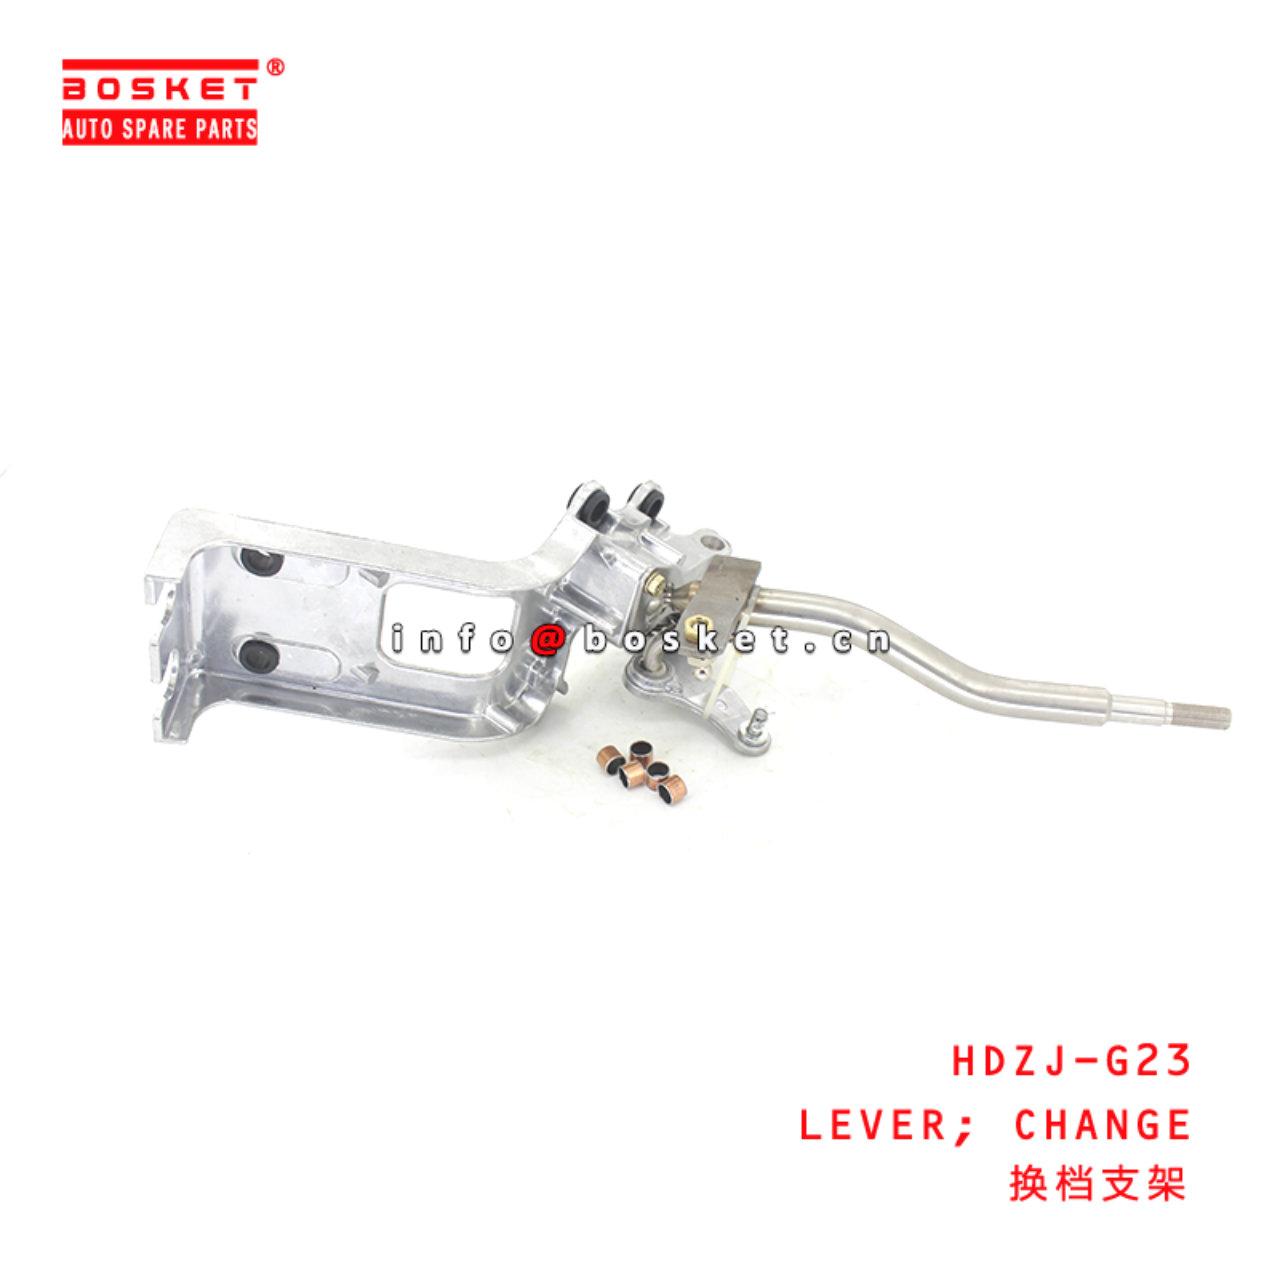 HDZJ-G23 Change Lever Suitable for ISUZU HINO 500